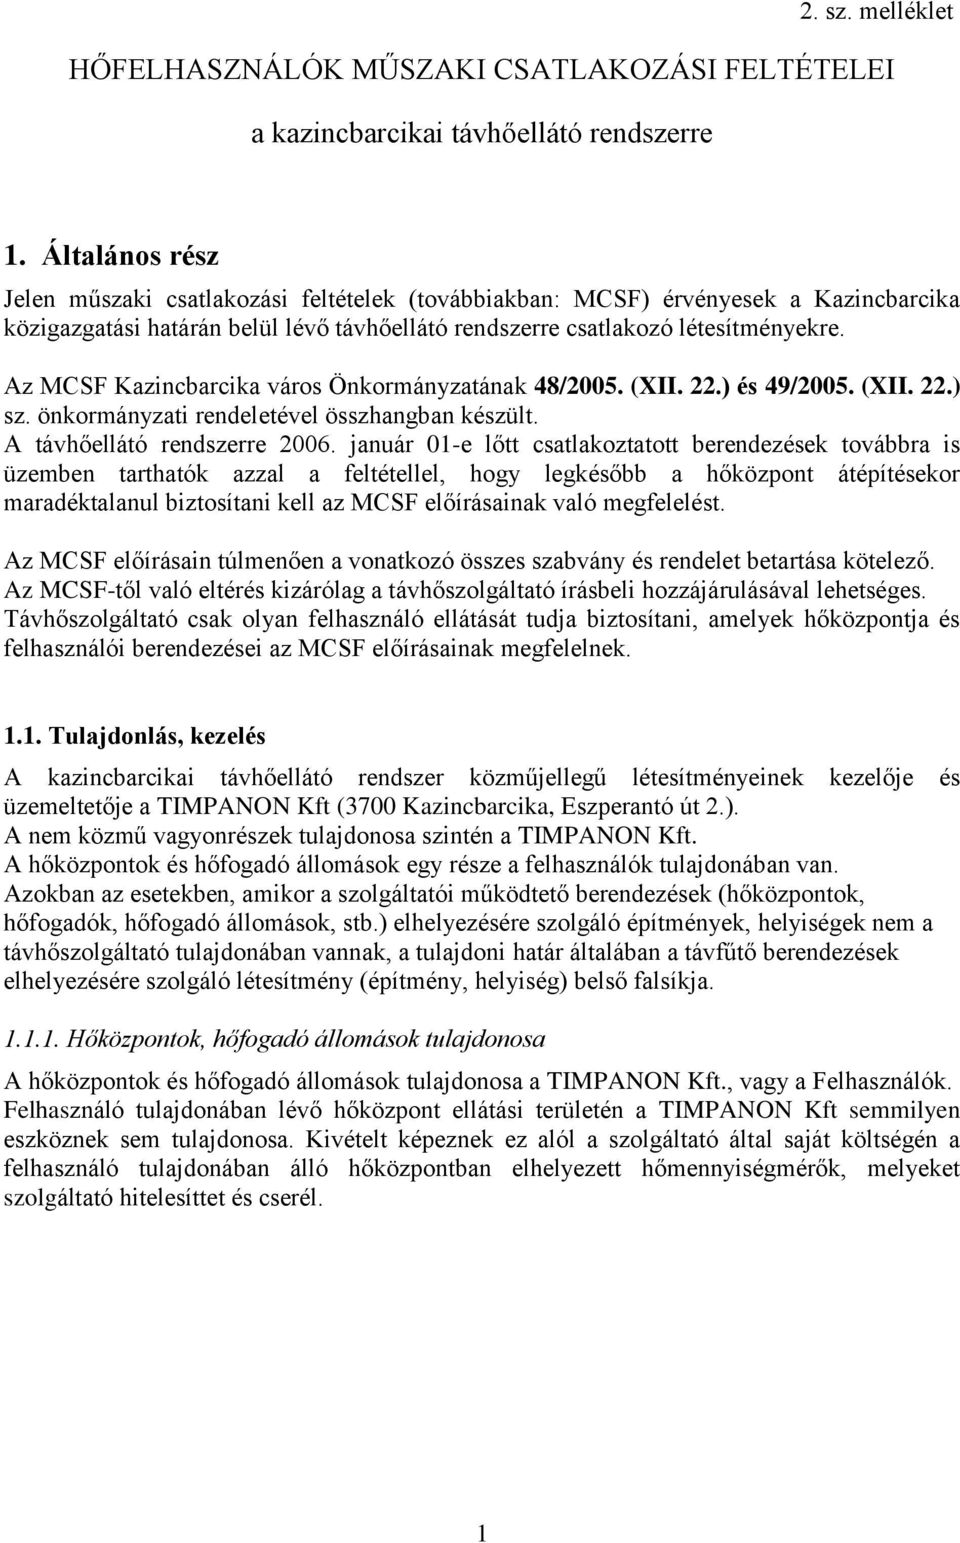 Az MCSF Kazincbarcika város Önkormányzatának 48/2005. (XII. 22.) és 49/2005. (XII. 22.) sz. önkormányzati rendeletével összhangban készült. A távhőellátó rendszerre 2006.